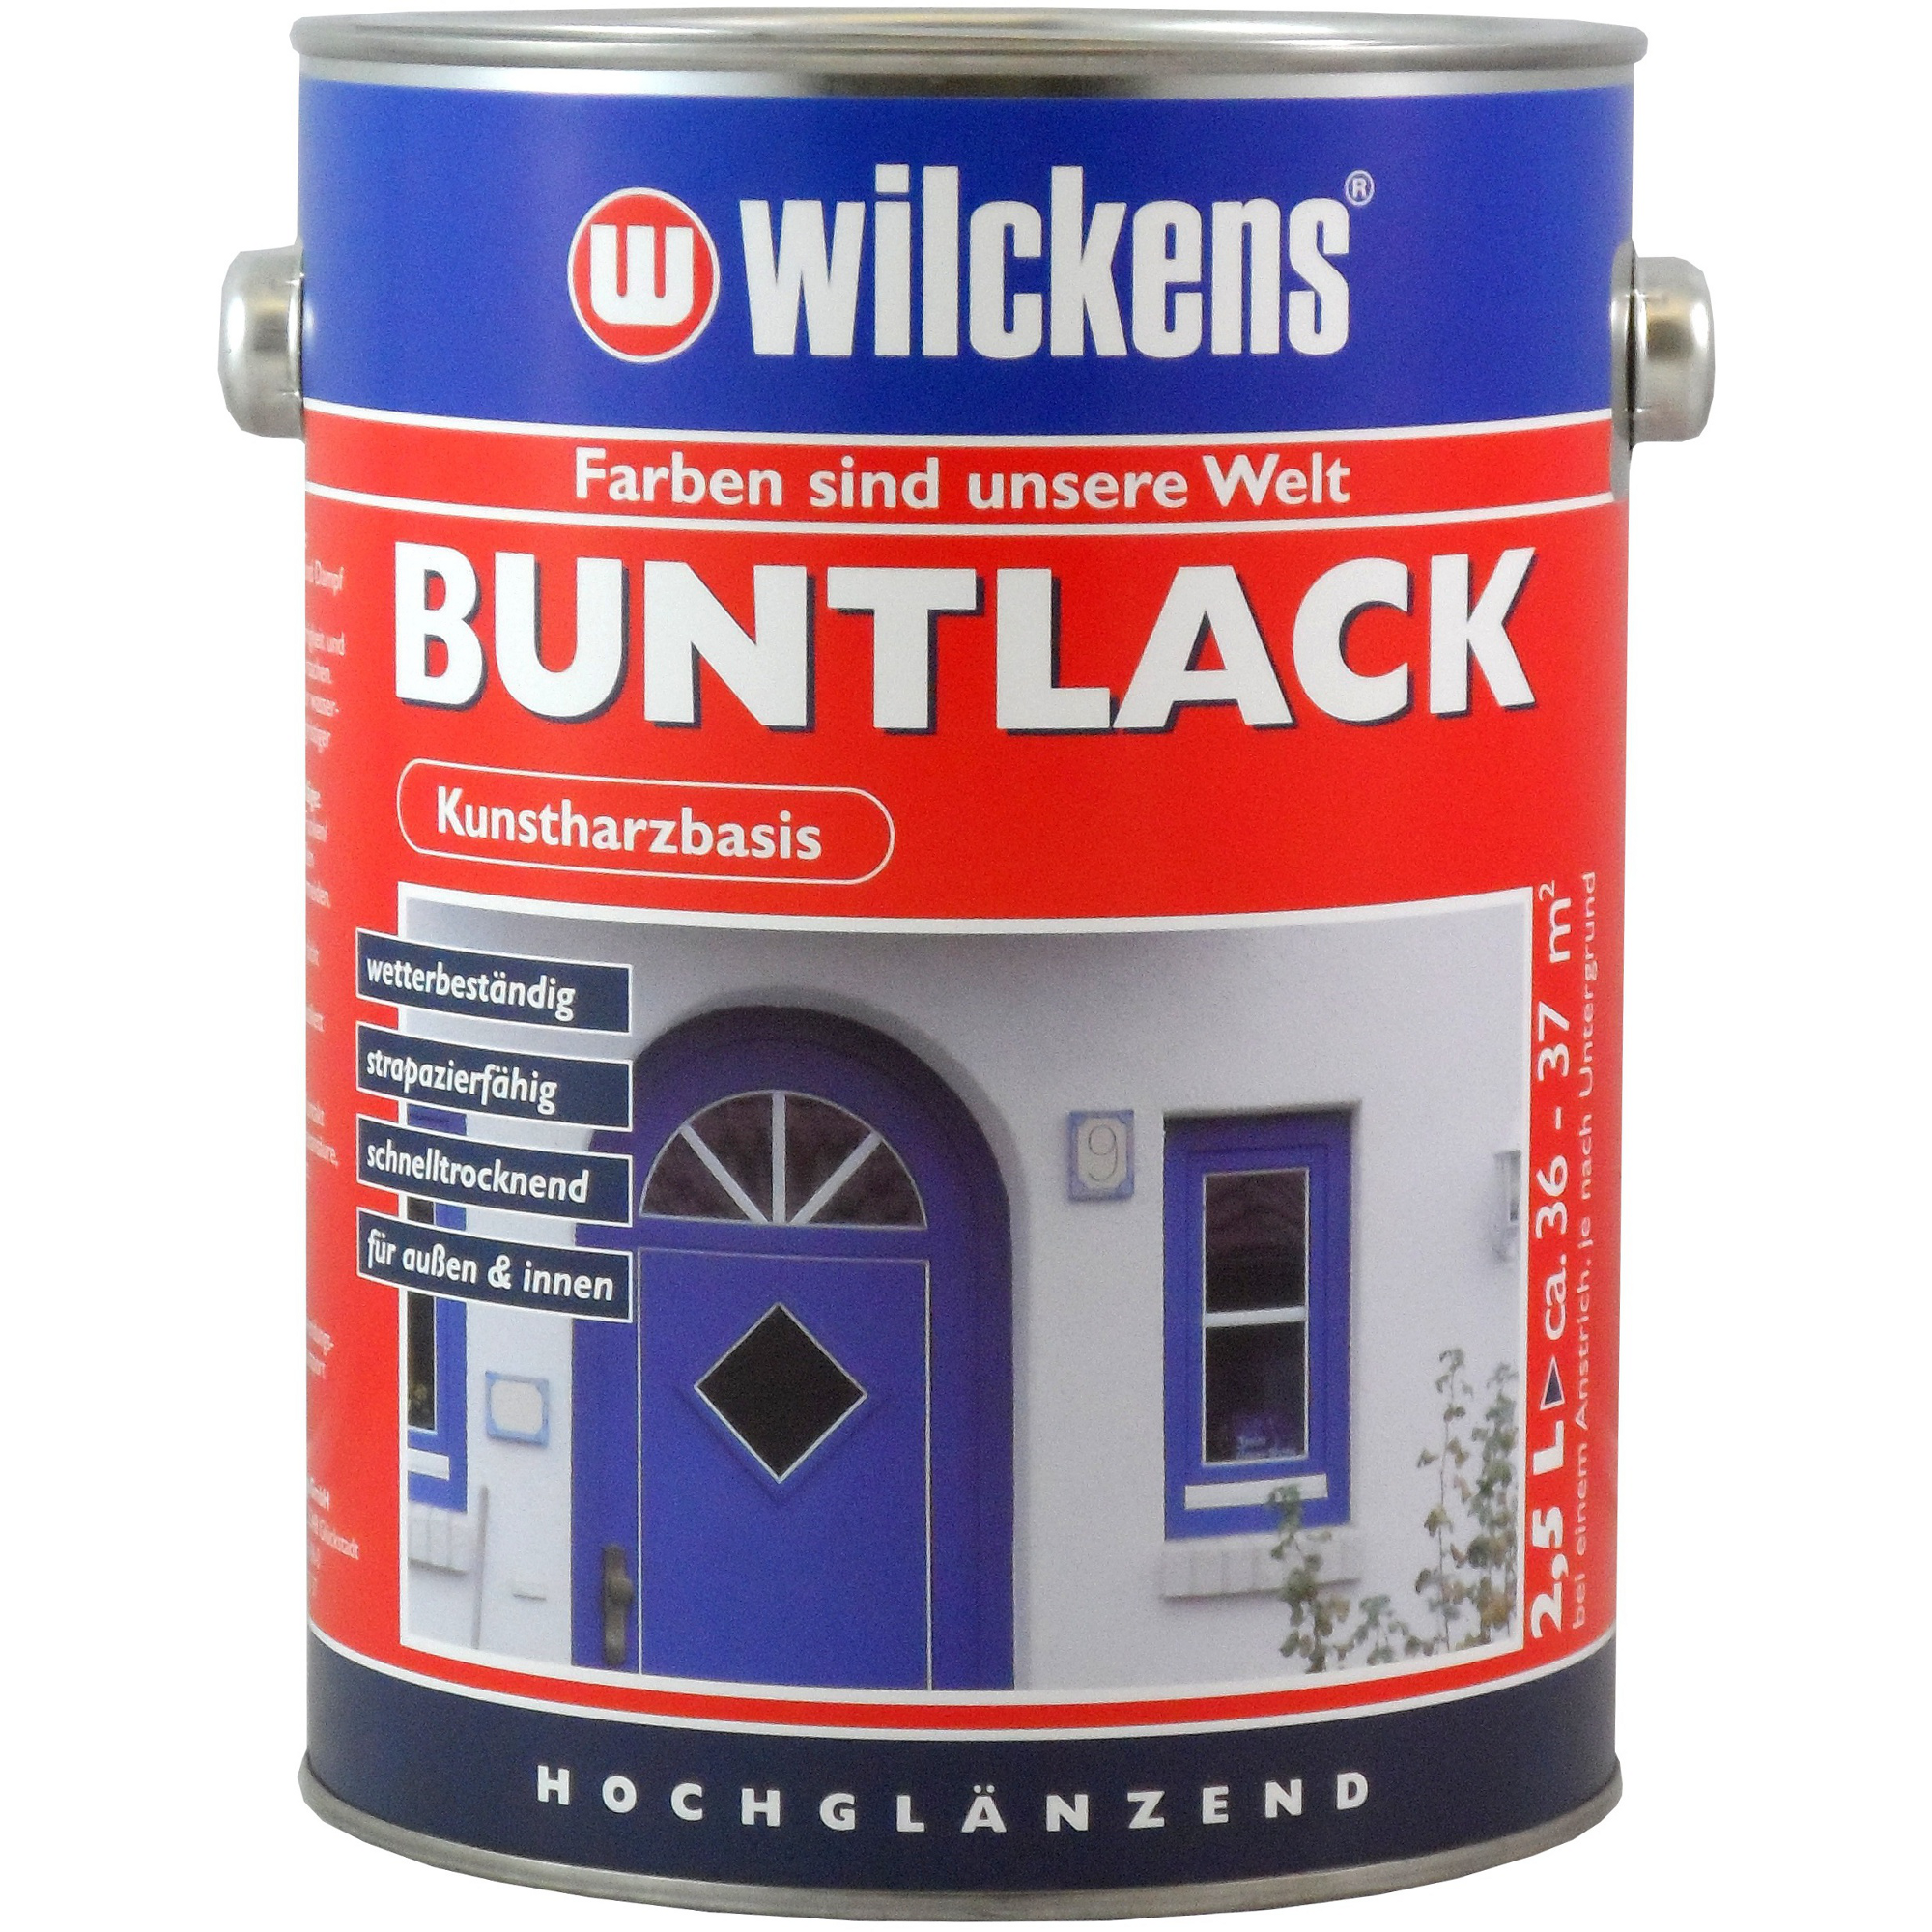 Buntlack 'RAL 9005' tiefschwarz hochglänzend 2,5 l + product picture